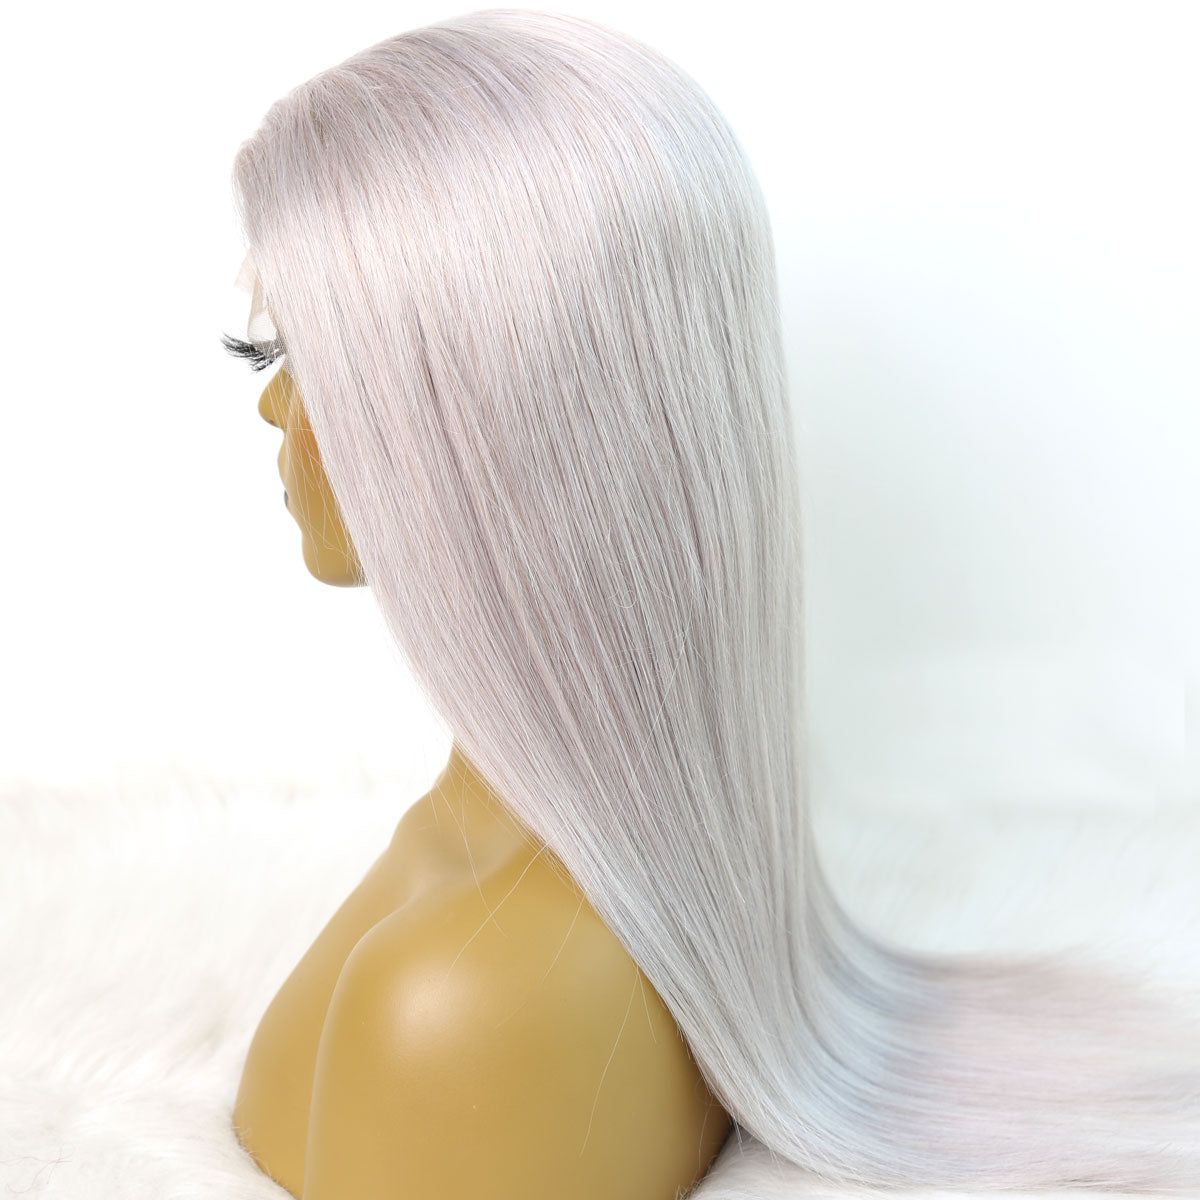 Long gray human hair wig